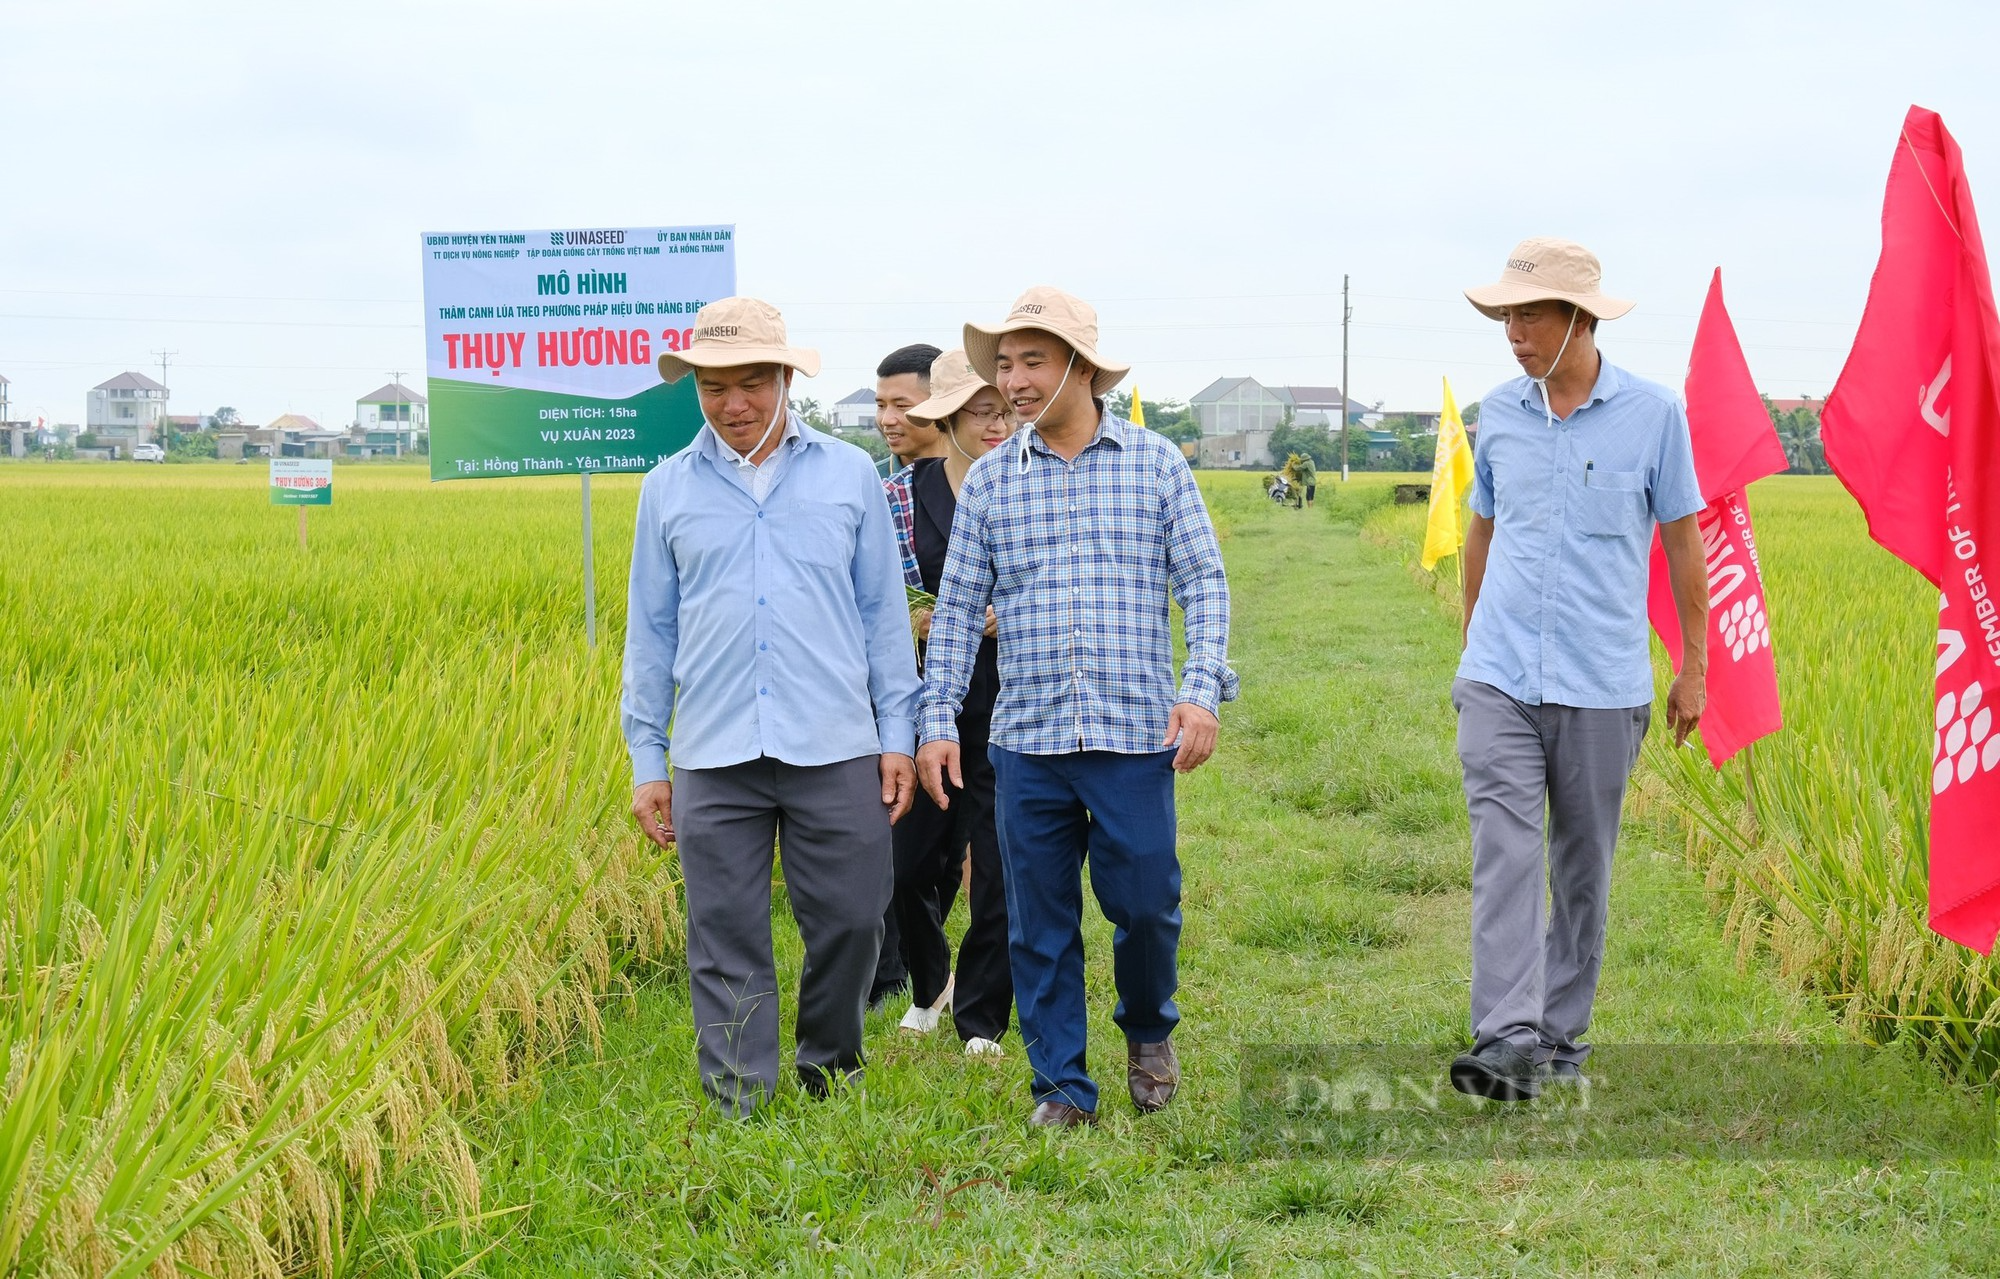 Thụy Hương 308 của Vinaseed khiến nông dân ở huyện Yên Thành, tỉnh Nghệ An bất ngờ khi đẻ khỏe, bông dài, hạt chắc - Ảnh 3.